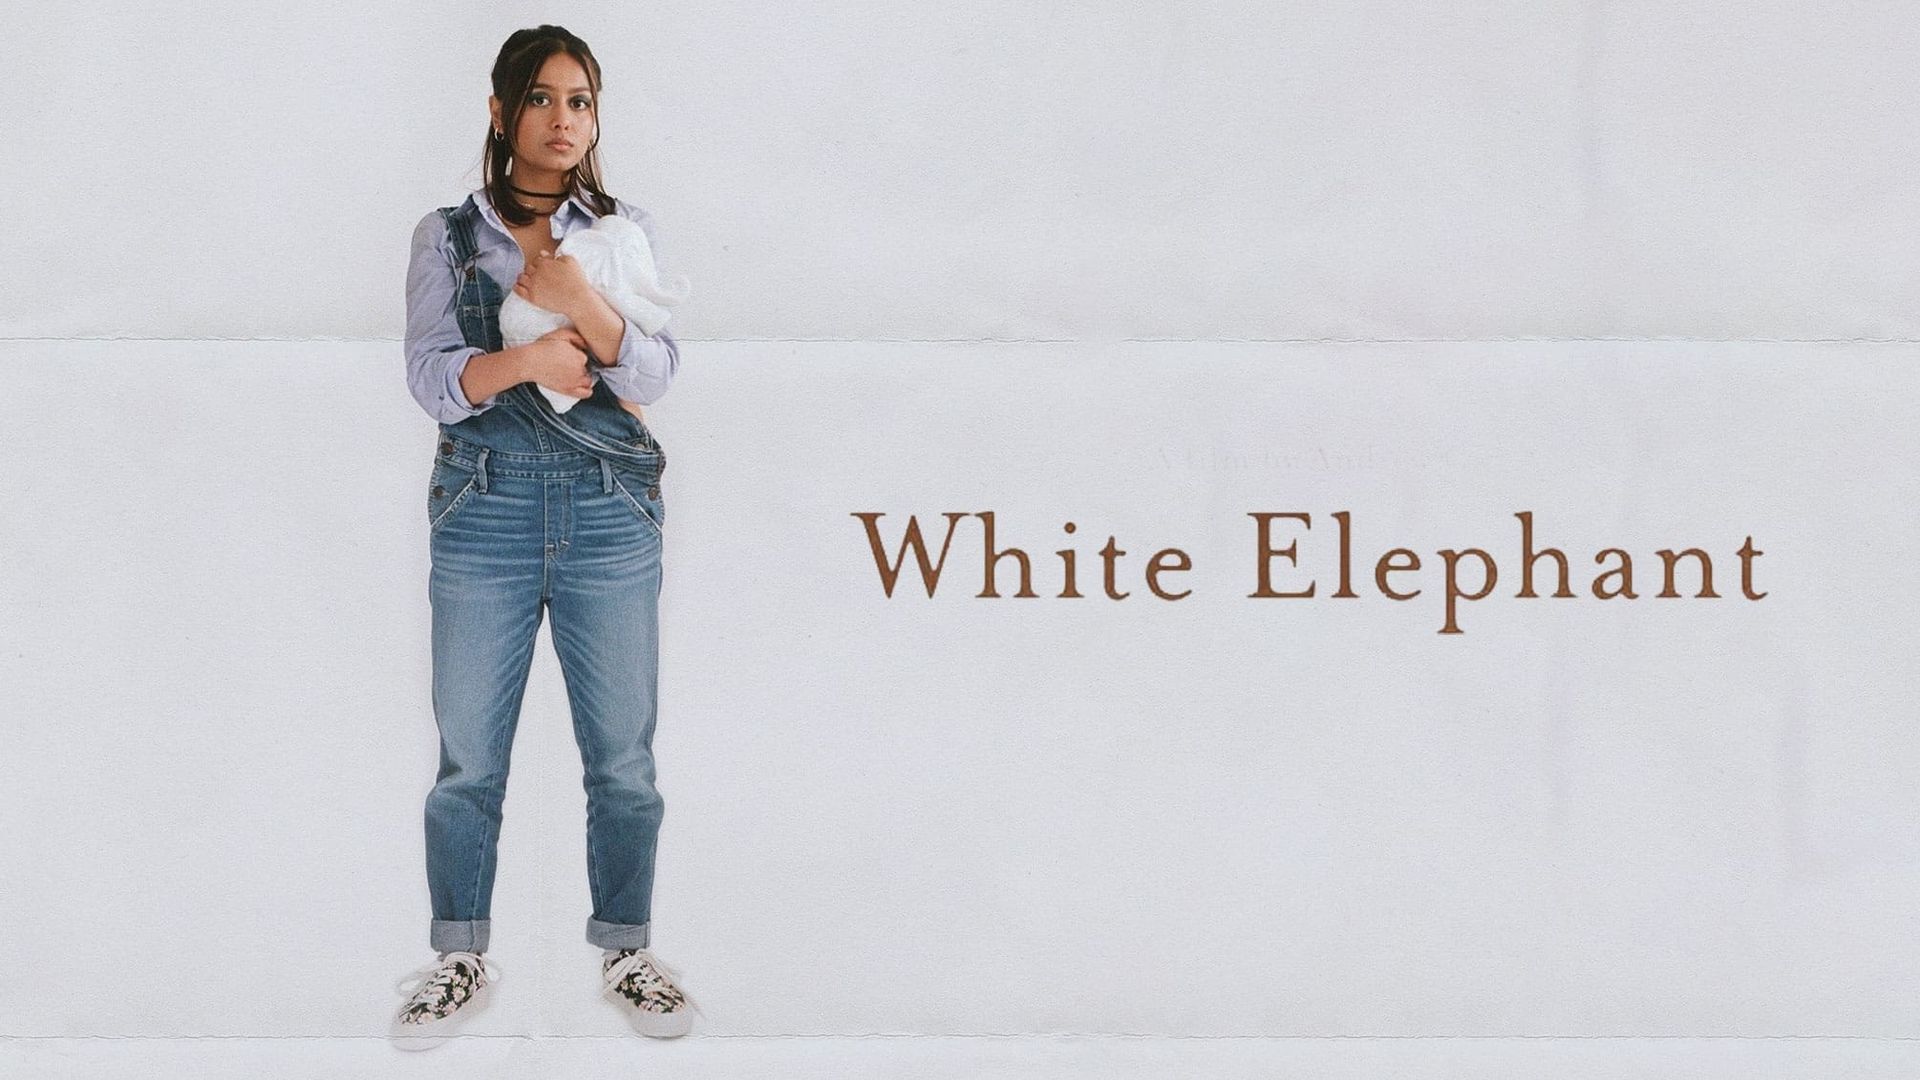 White Elephant background